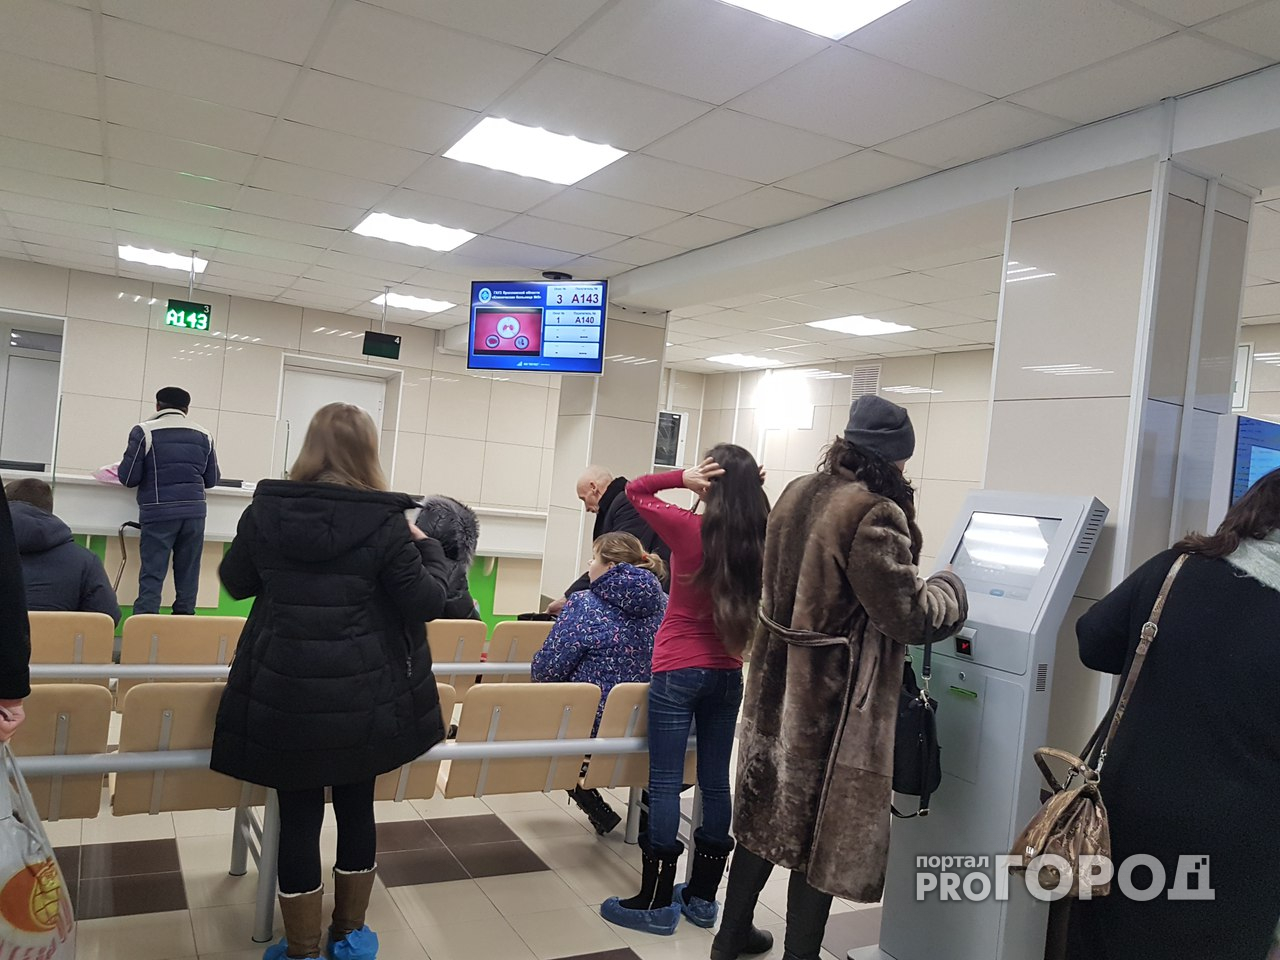 Ярославская поликлиника стала похожа на отделение банка